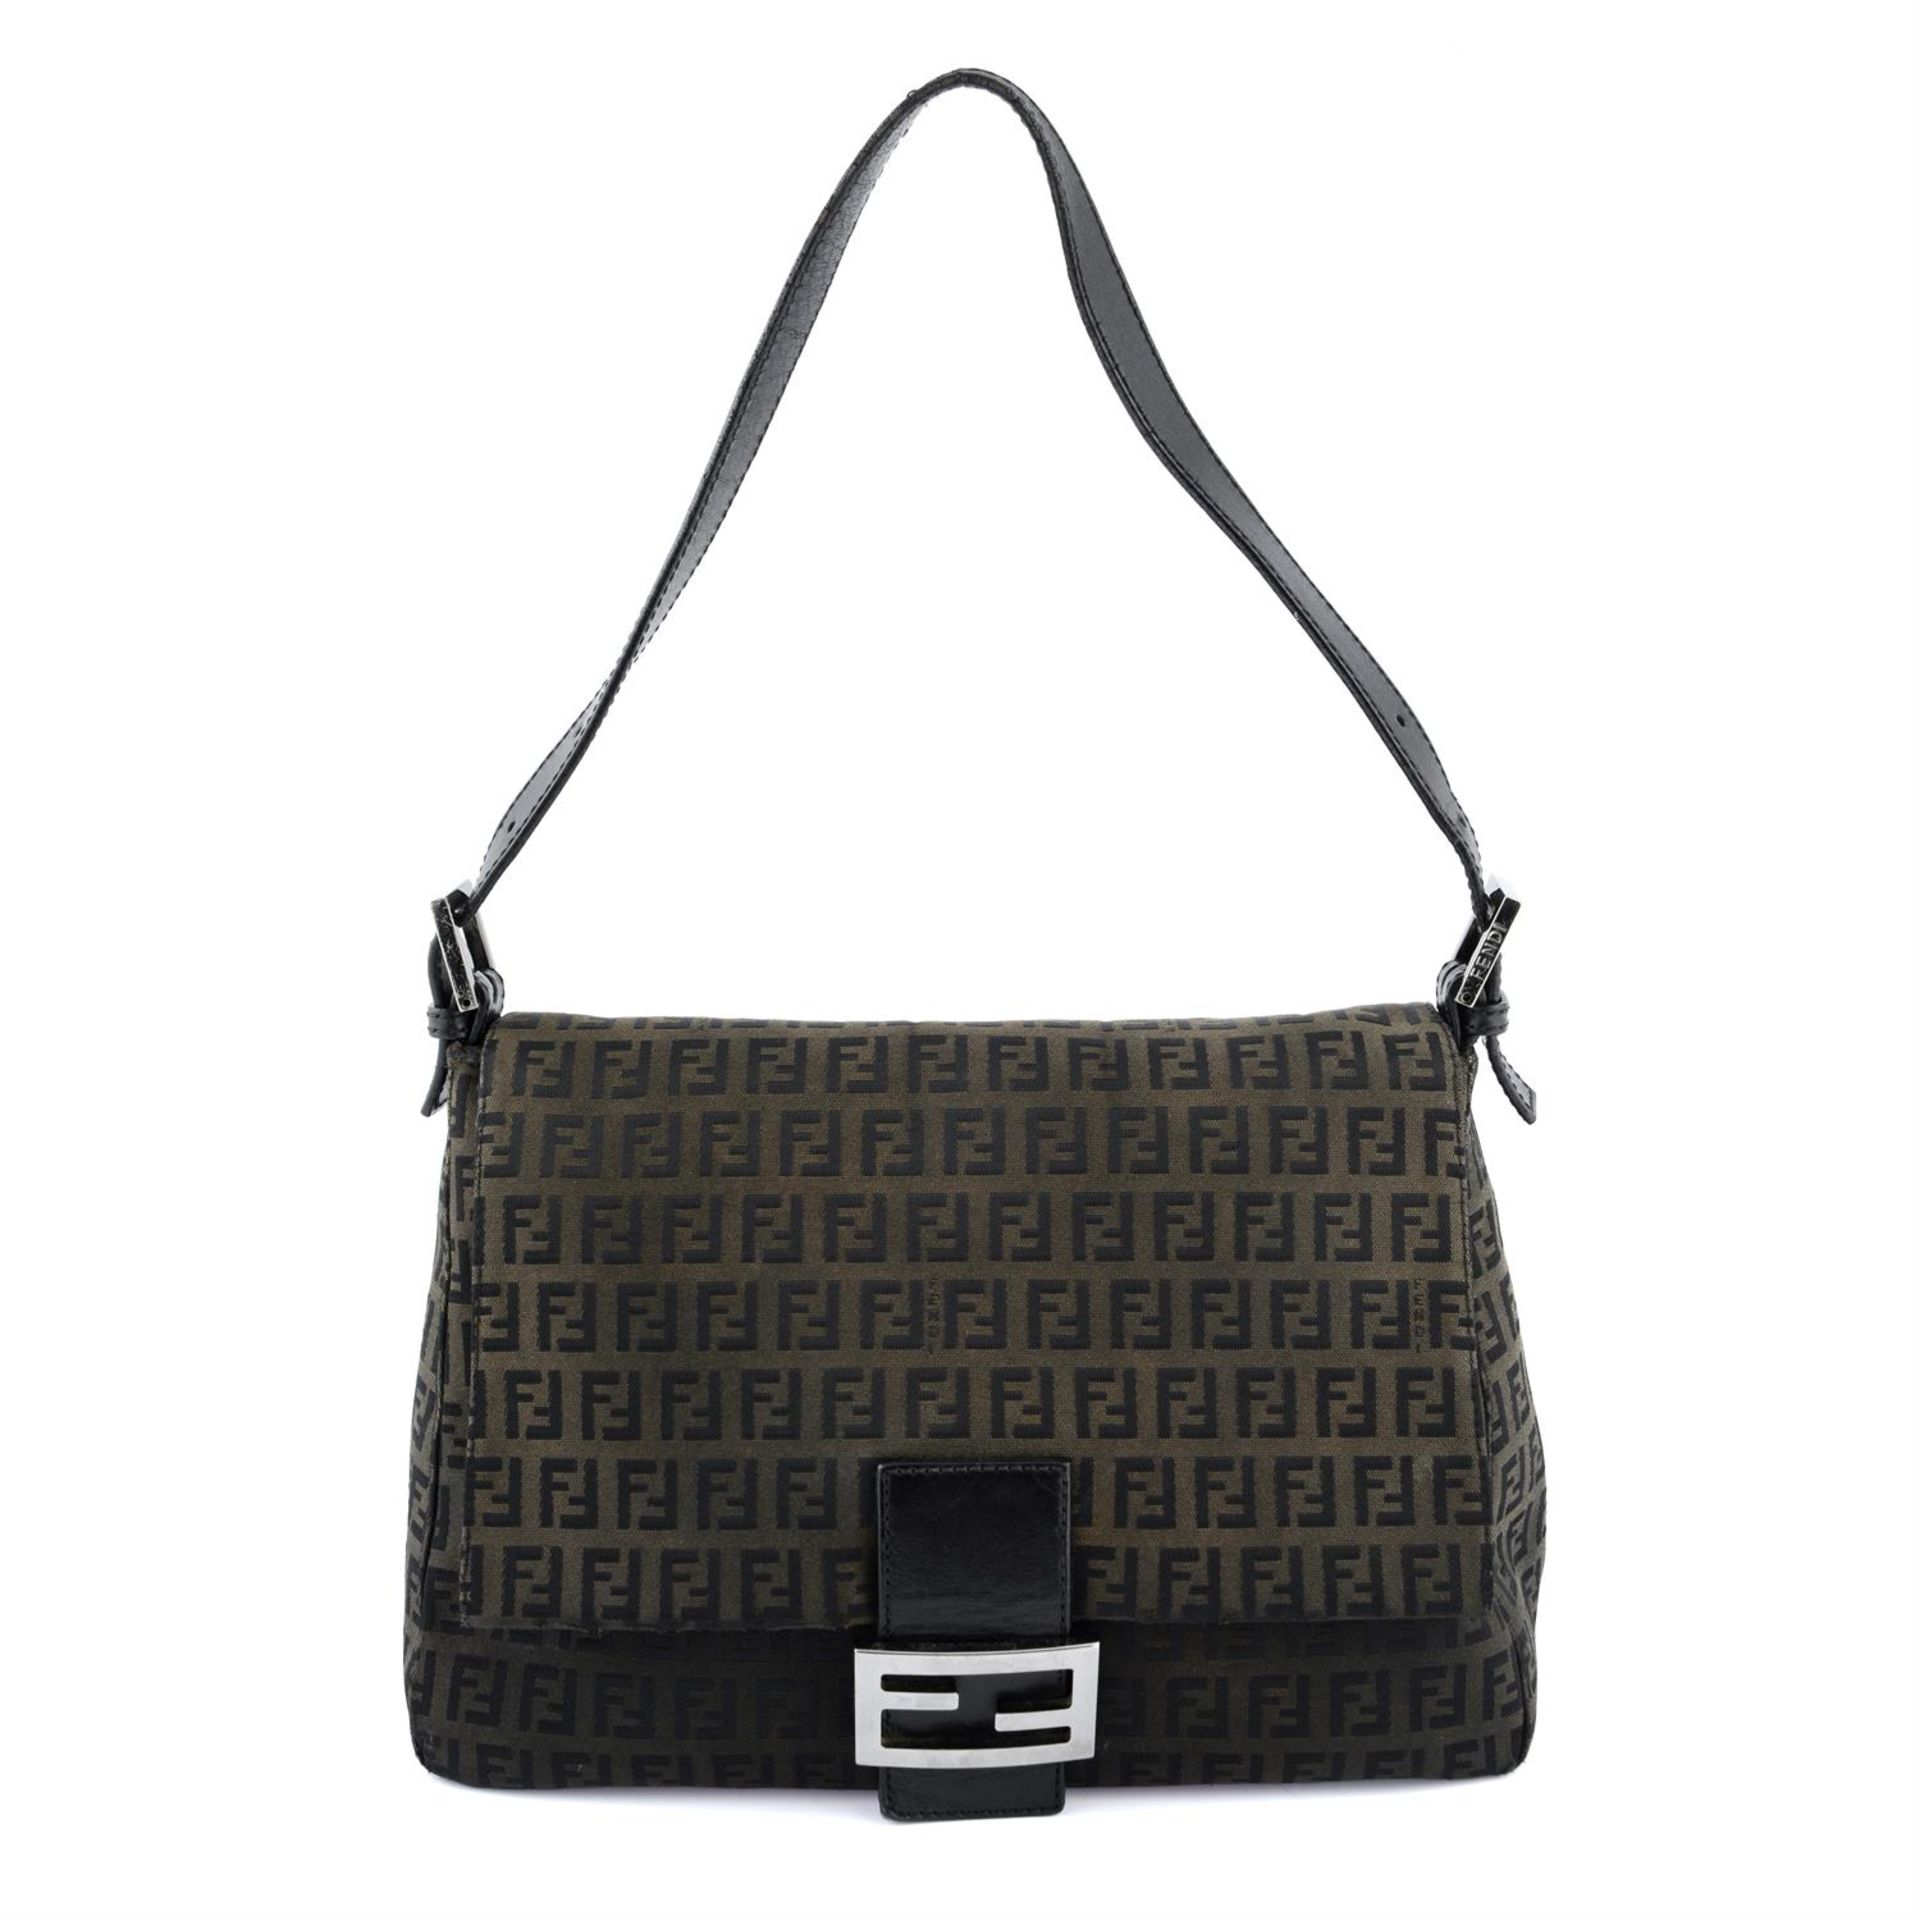 FENDI - a brown Mama Baguette handbag.